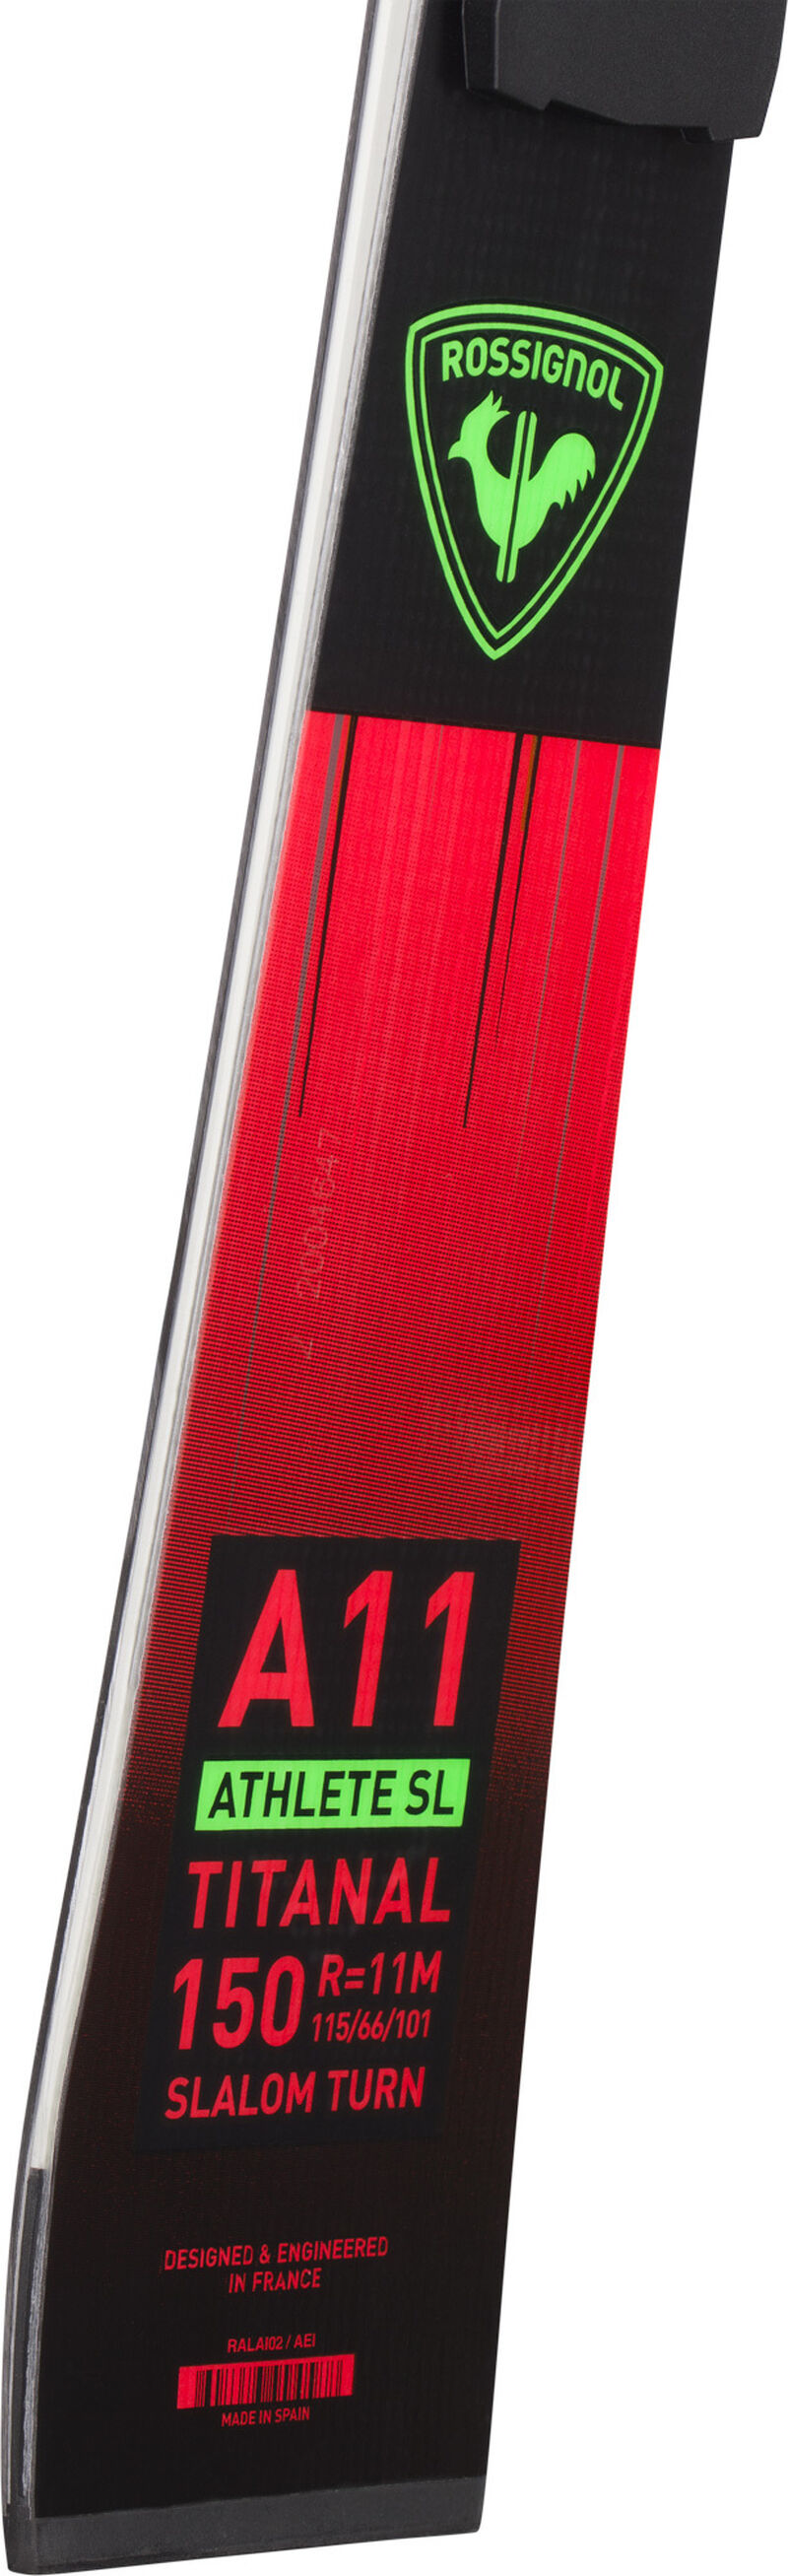 Rossignol Skis racing unisexe HERO ATHLETE SL 150 R22 red